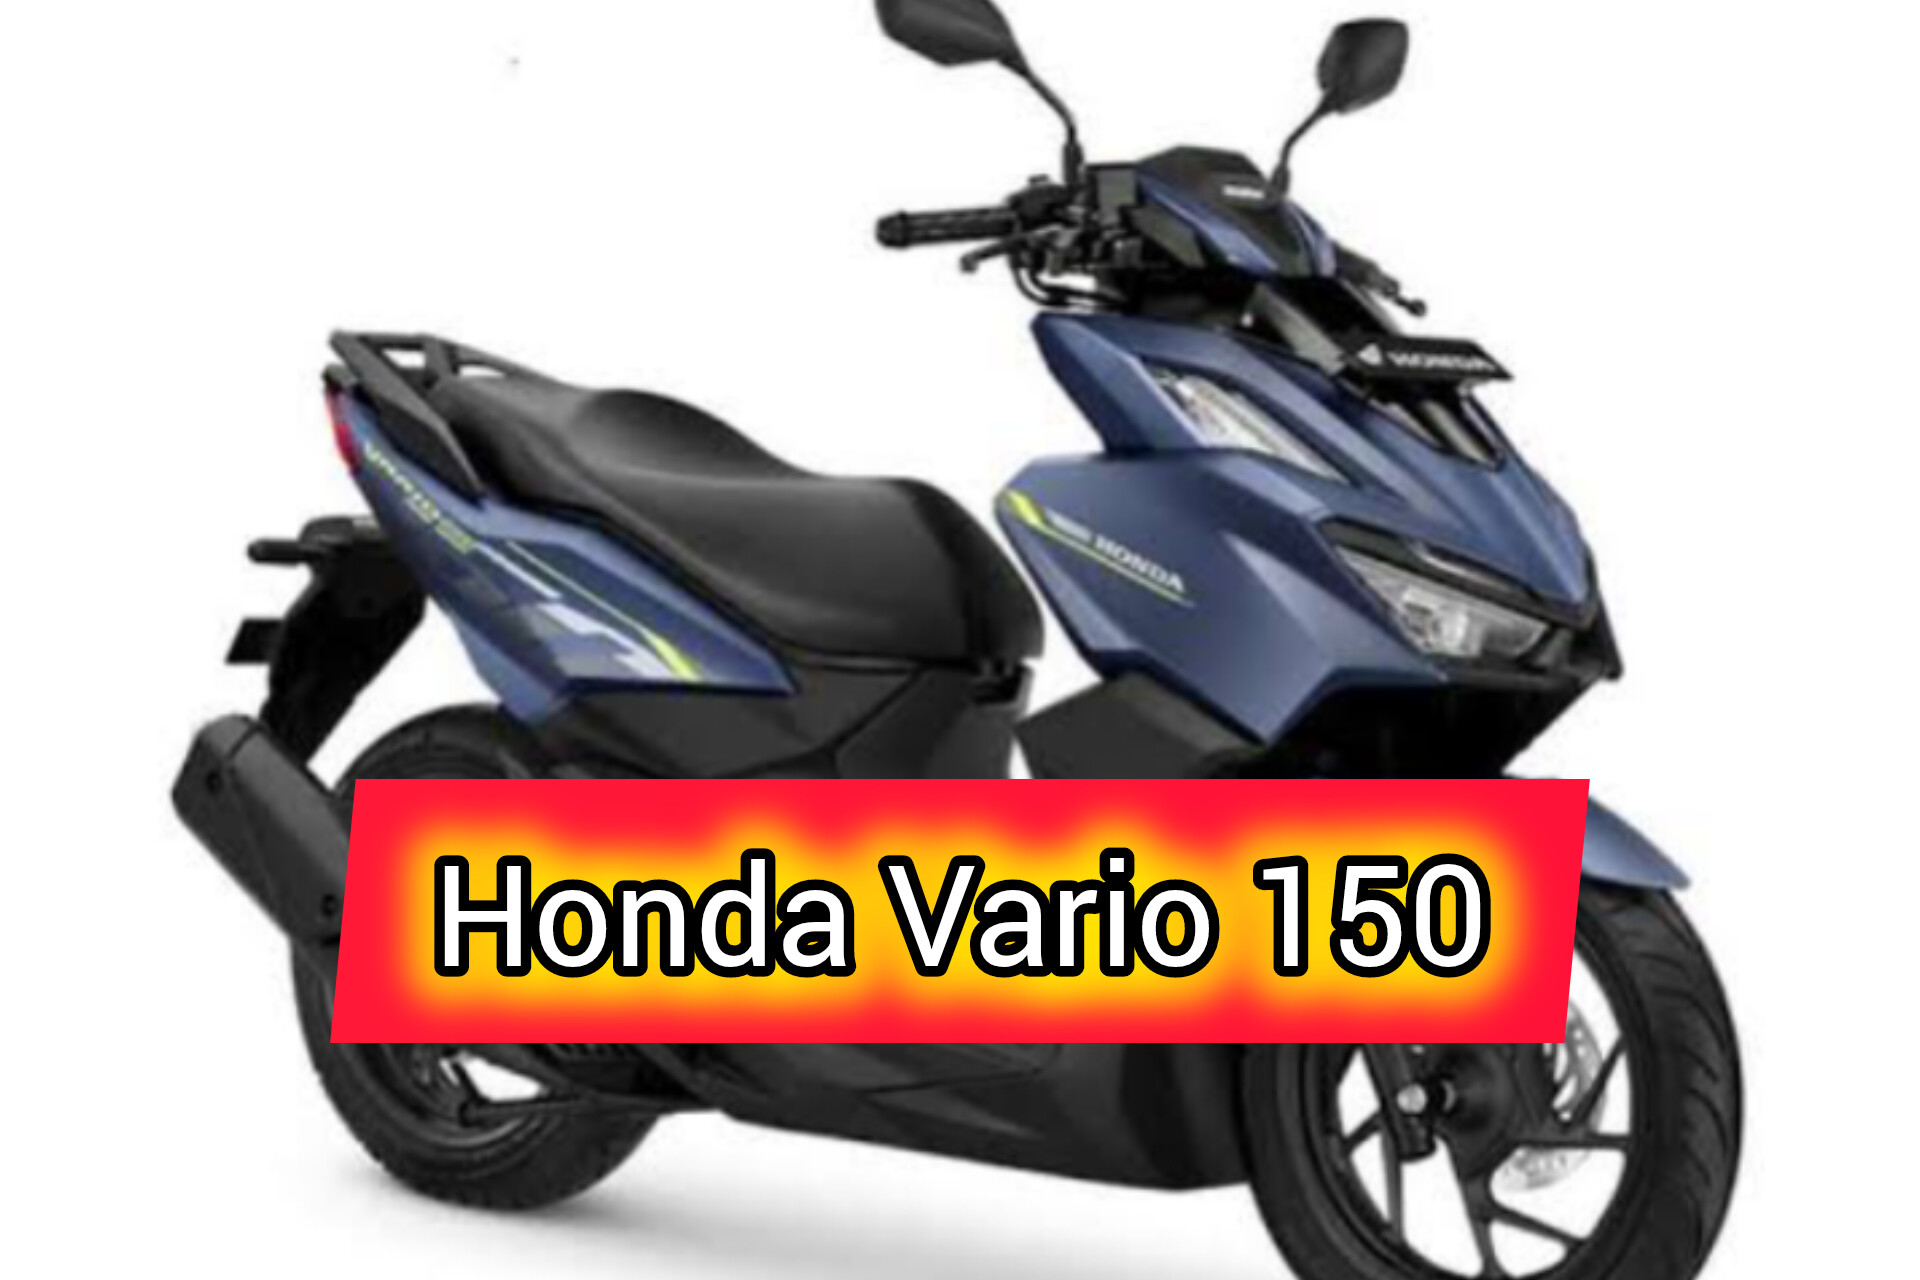 Honda Vario 150: Motor matic Favorit untuk Perjalanan Jauh, Performa Kencang dan Desain yang Stylish